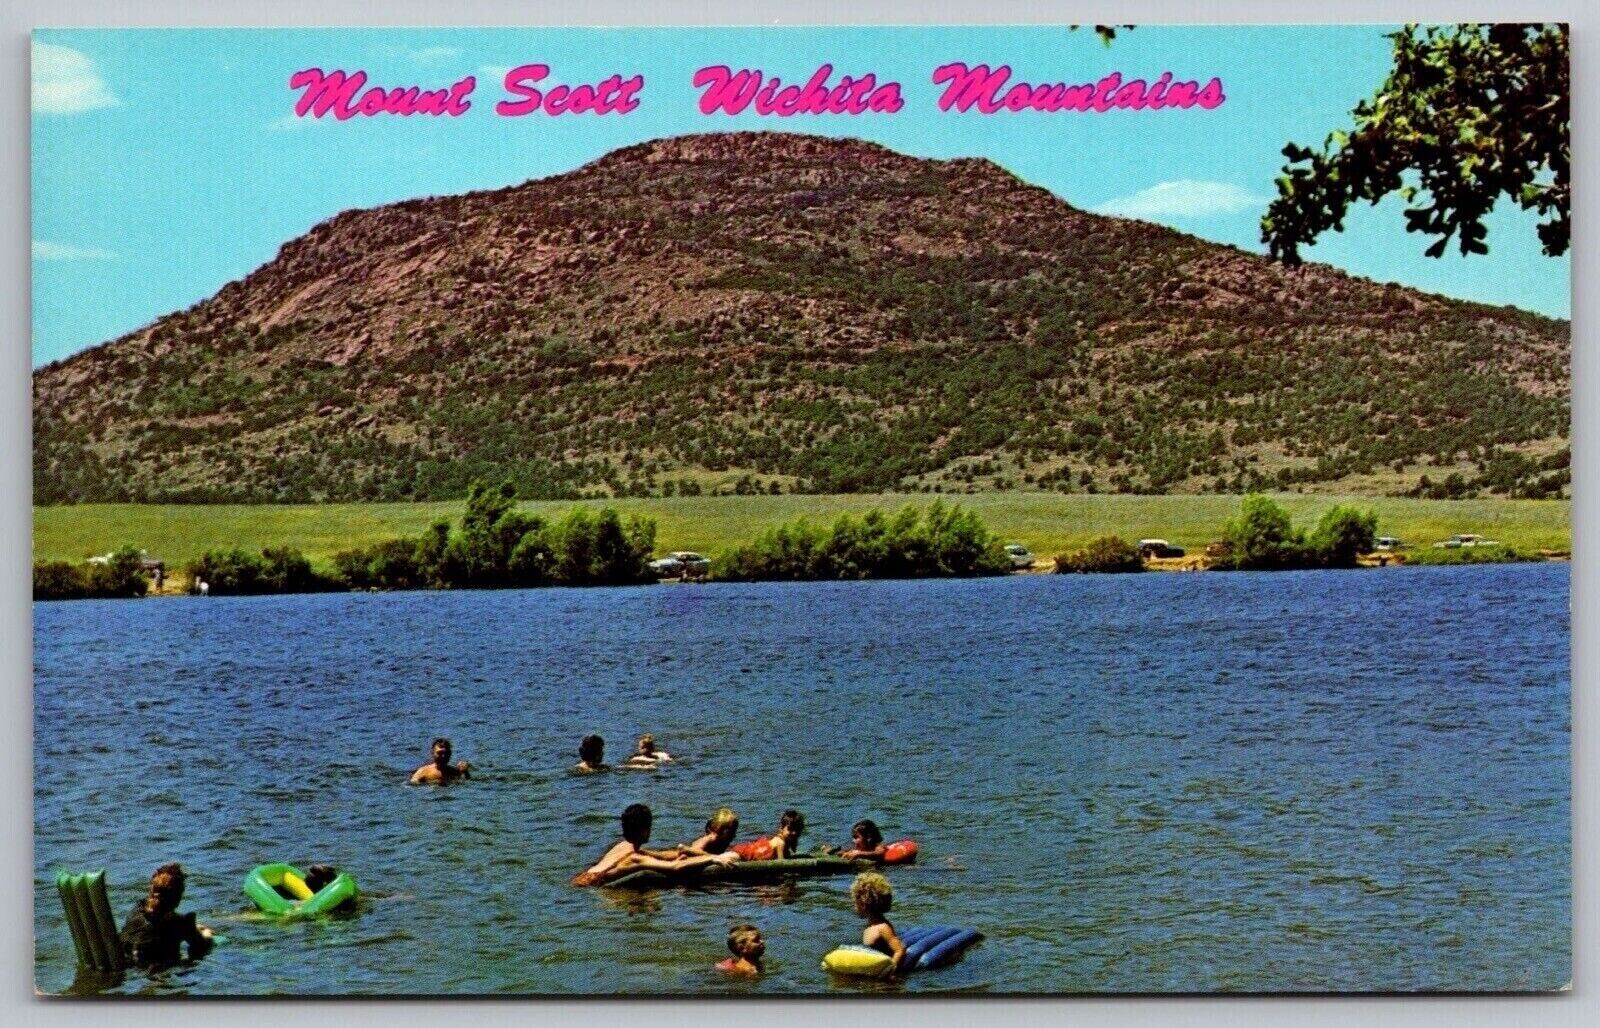 Mount Scott Wichita Mountains Lawton Oklahoma Lake Elmer Thomas VNG UNP Postcard